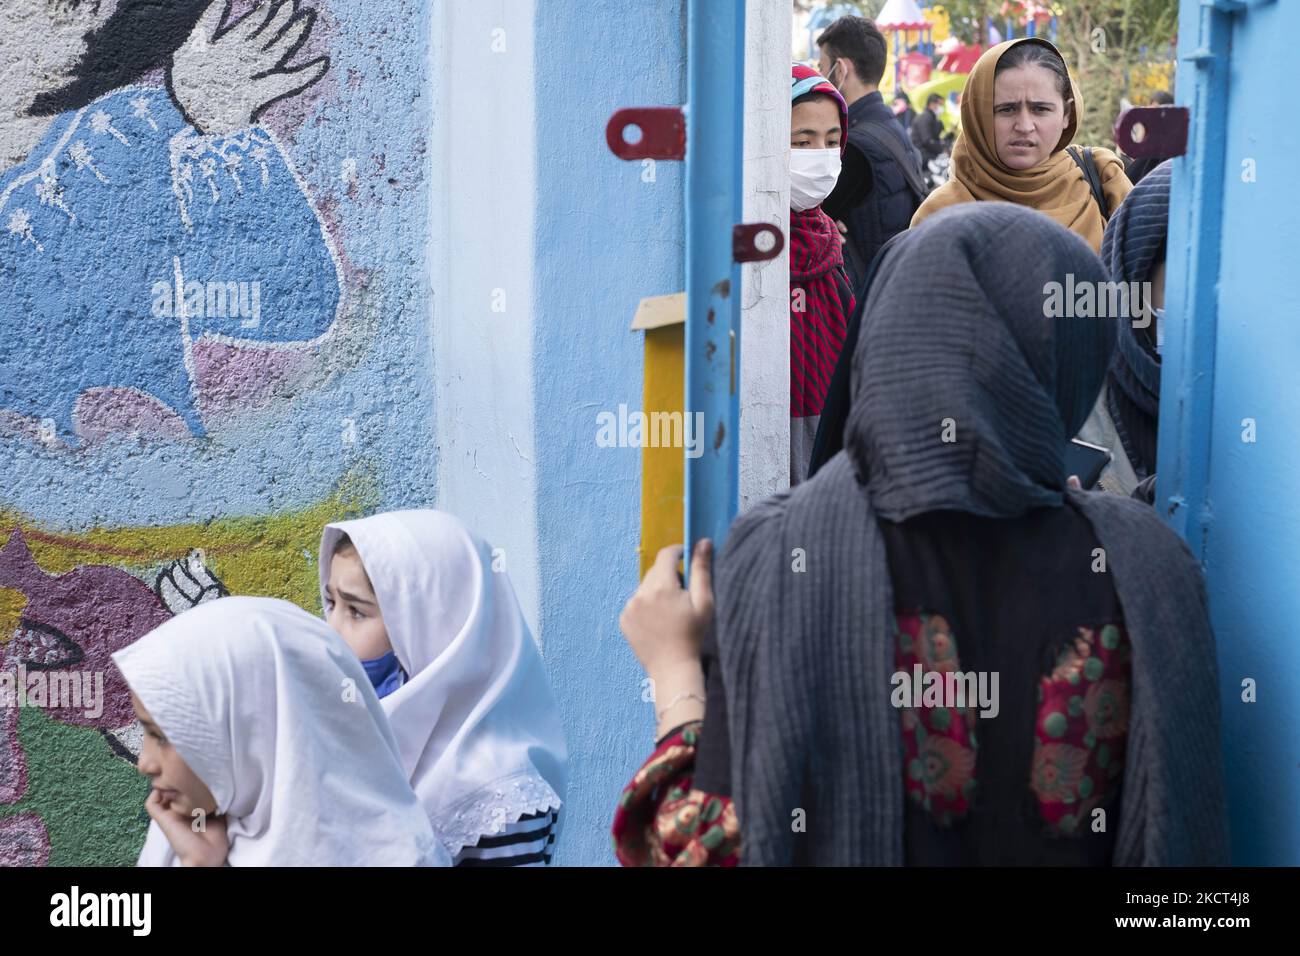 Un membro del personale della scuola afghana di Farhang parla con le madri di giovani studentesse rifugiate alle porte della scuola di Farhang nel primo giorno del nuovo anno accademico? Nel sud di Teheran il 1 novembre 2021. La scuola di Farhang è stata fondata nel 2000 dal rifugiato afgano Nader Mousavi che si è laureato in sociologia presso l'Università di Teheran, per i bambini rifugiati afghani, E ora due anni dopo l’inizio dell’epidemia COVID-19 in Iran, dove la scuola operava a tempo parziale, ha iniziato a funzionare a tempo pieno e le scolaresche e gli scolari afghani possono frequentare la scuola. Le famiglie fanno ha Foto Stock